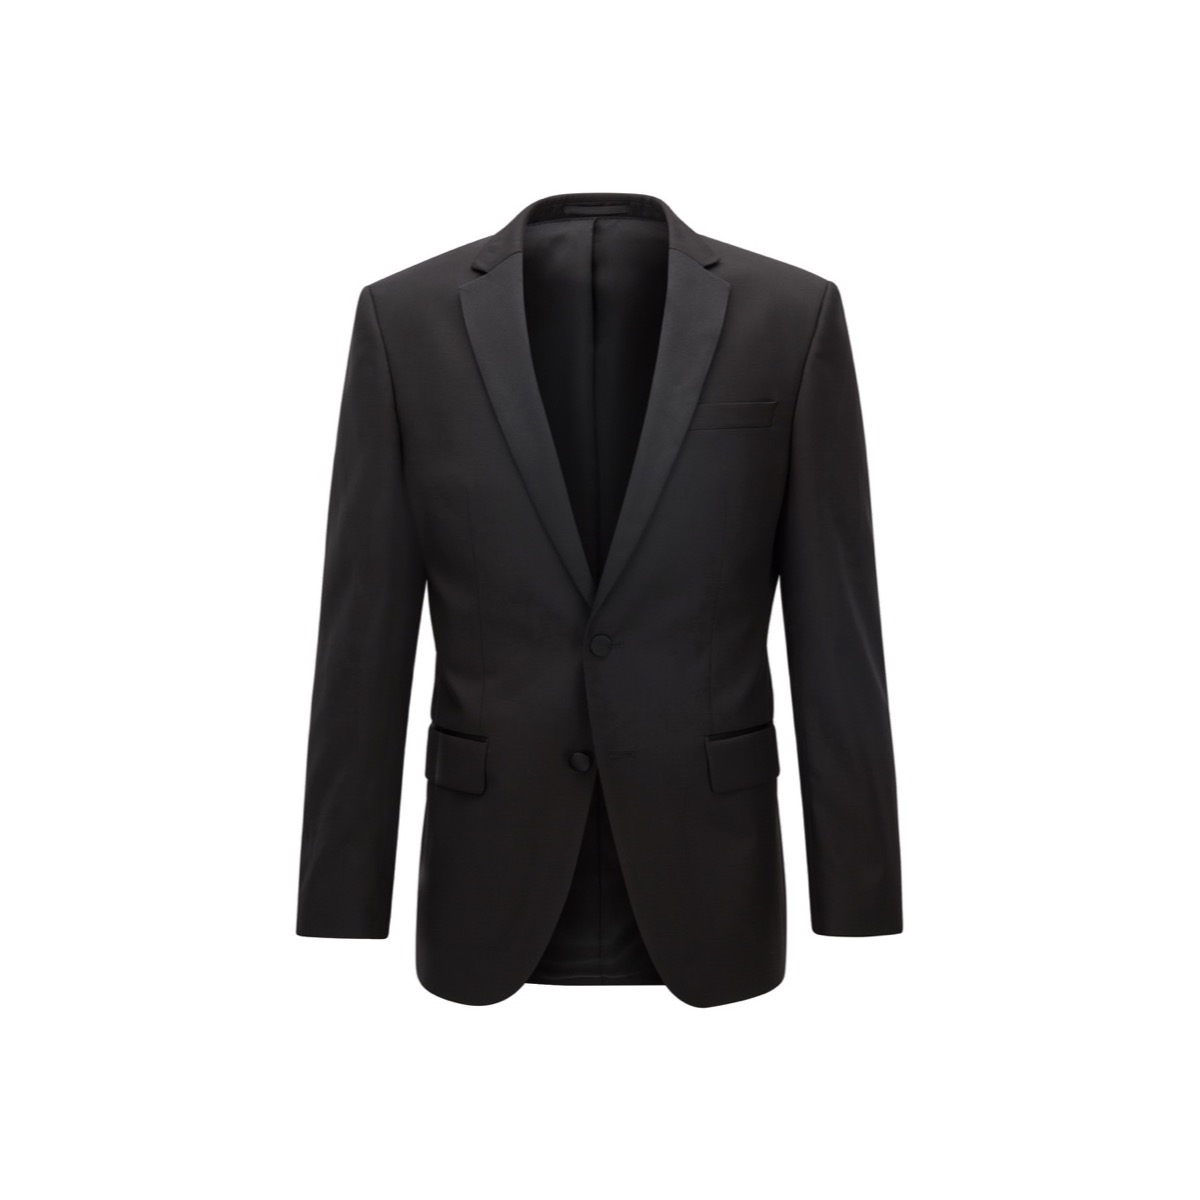 Hugo Boss Dinner Jacket Black - Coachman Menswear